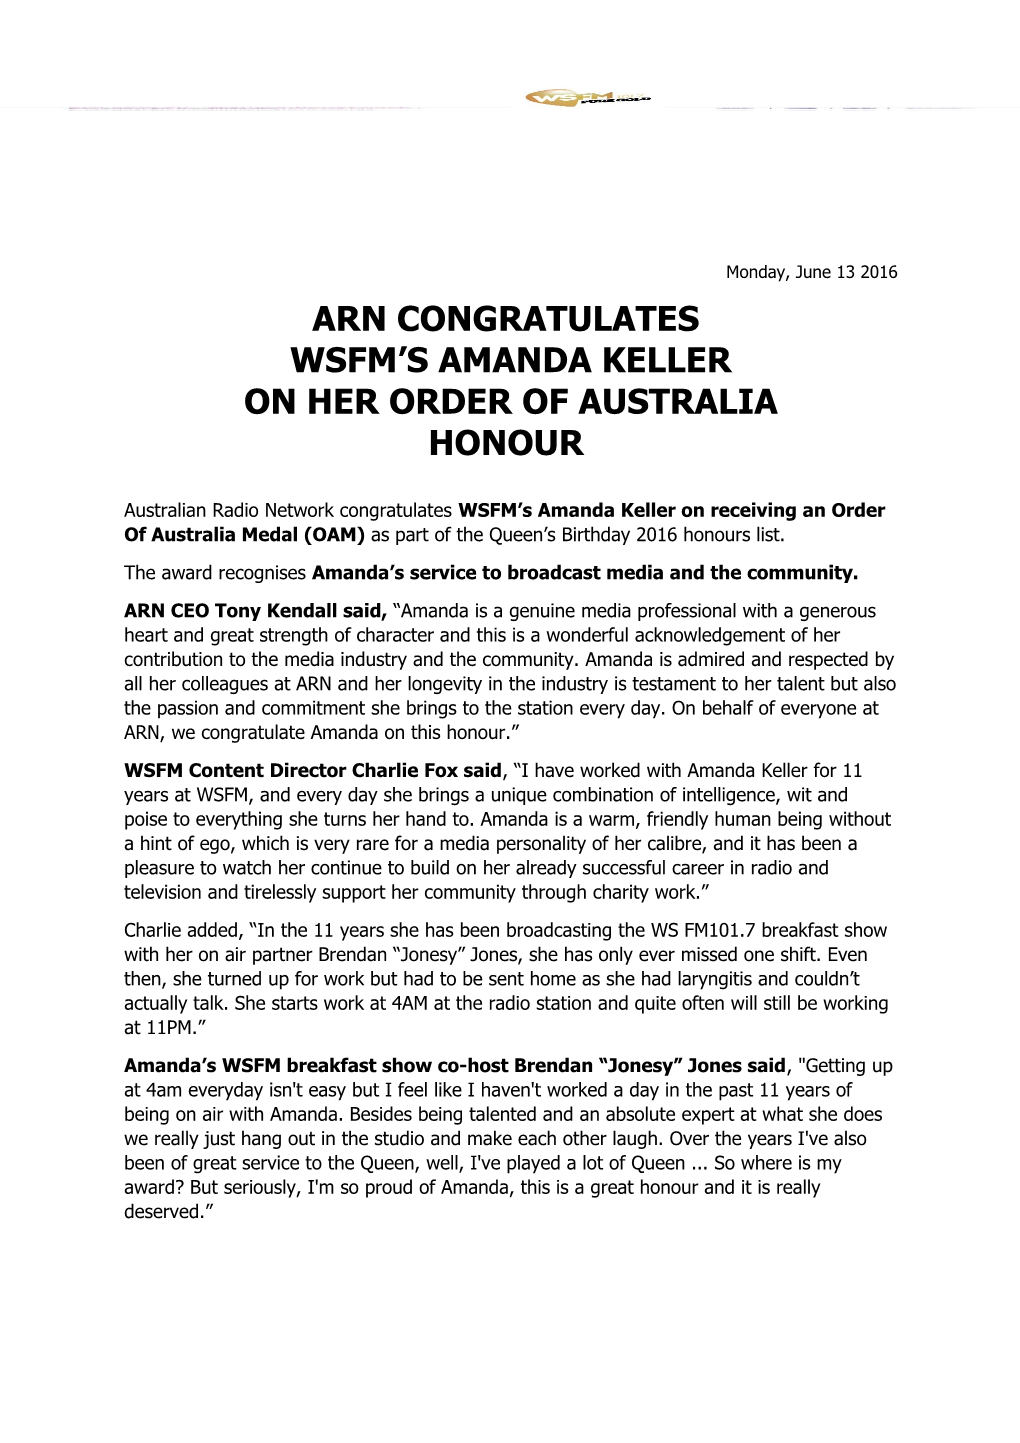 Arn Congratulates Wsfm S Amanda Keller on Her Order of Australia Honour